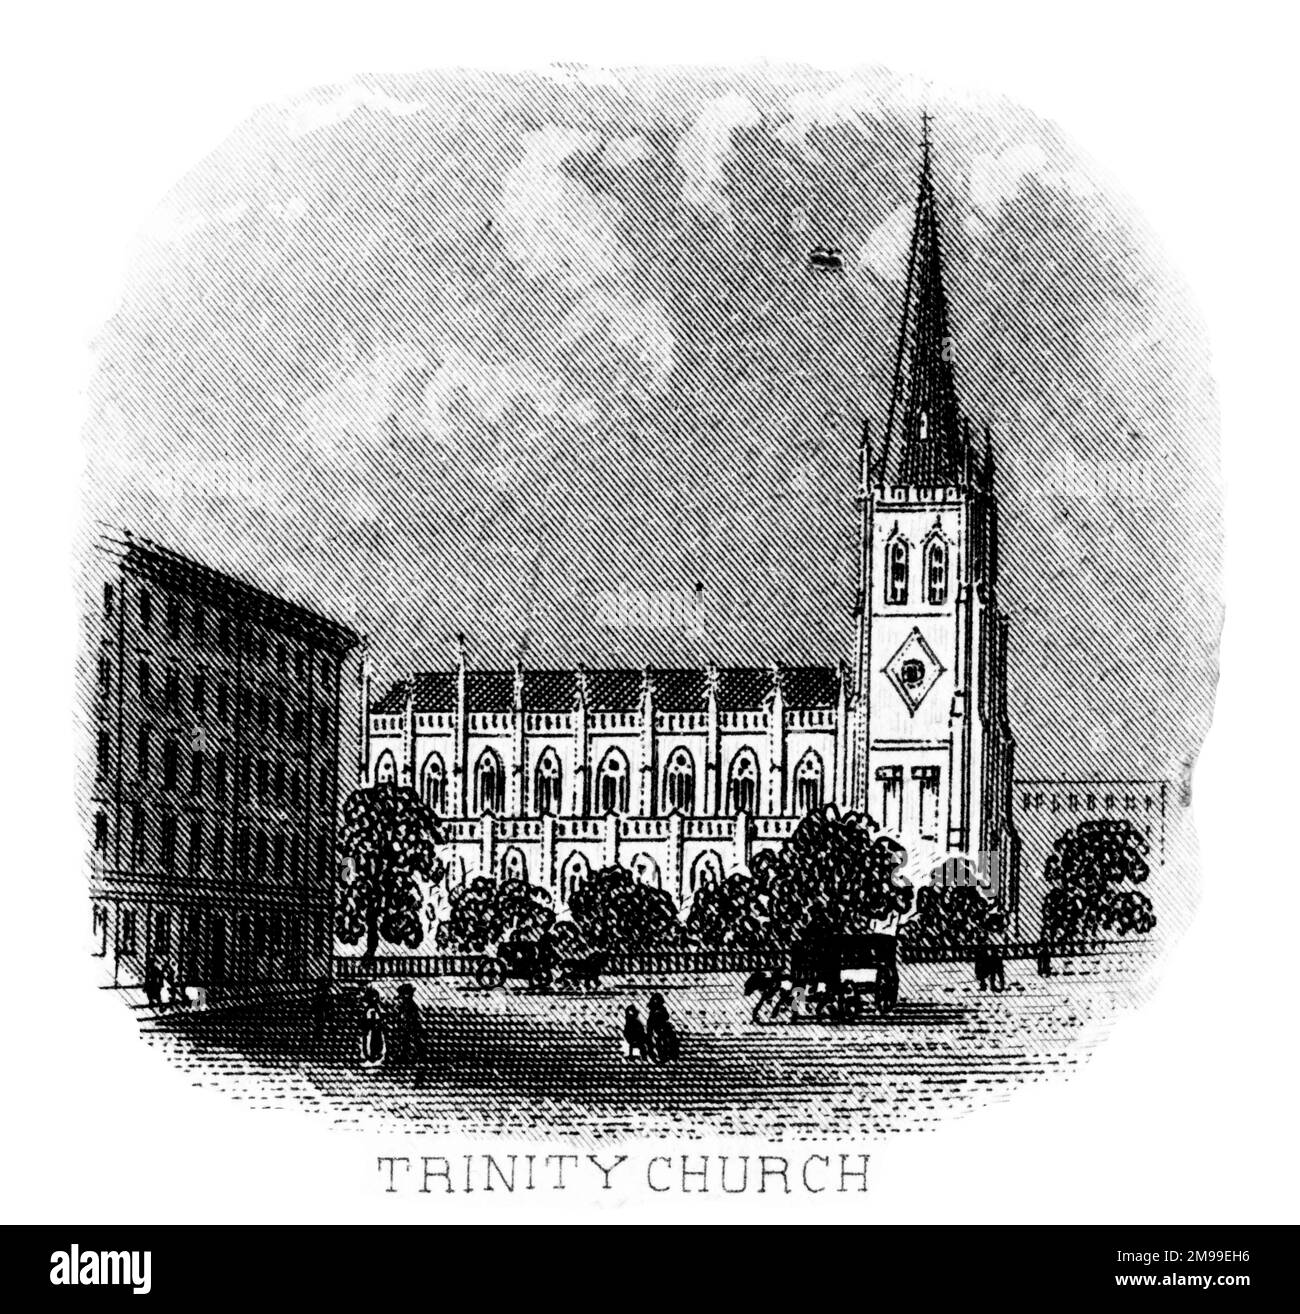 Trinity Church, New York City, USA. Stock Photo